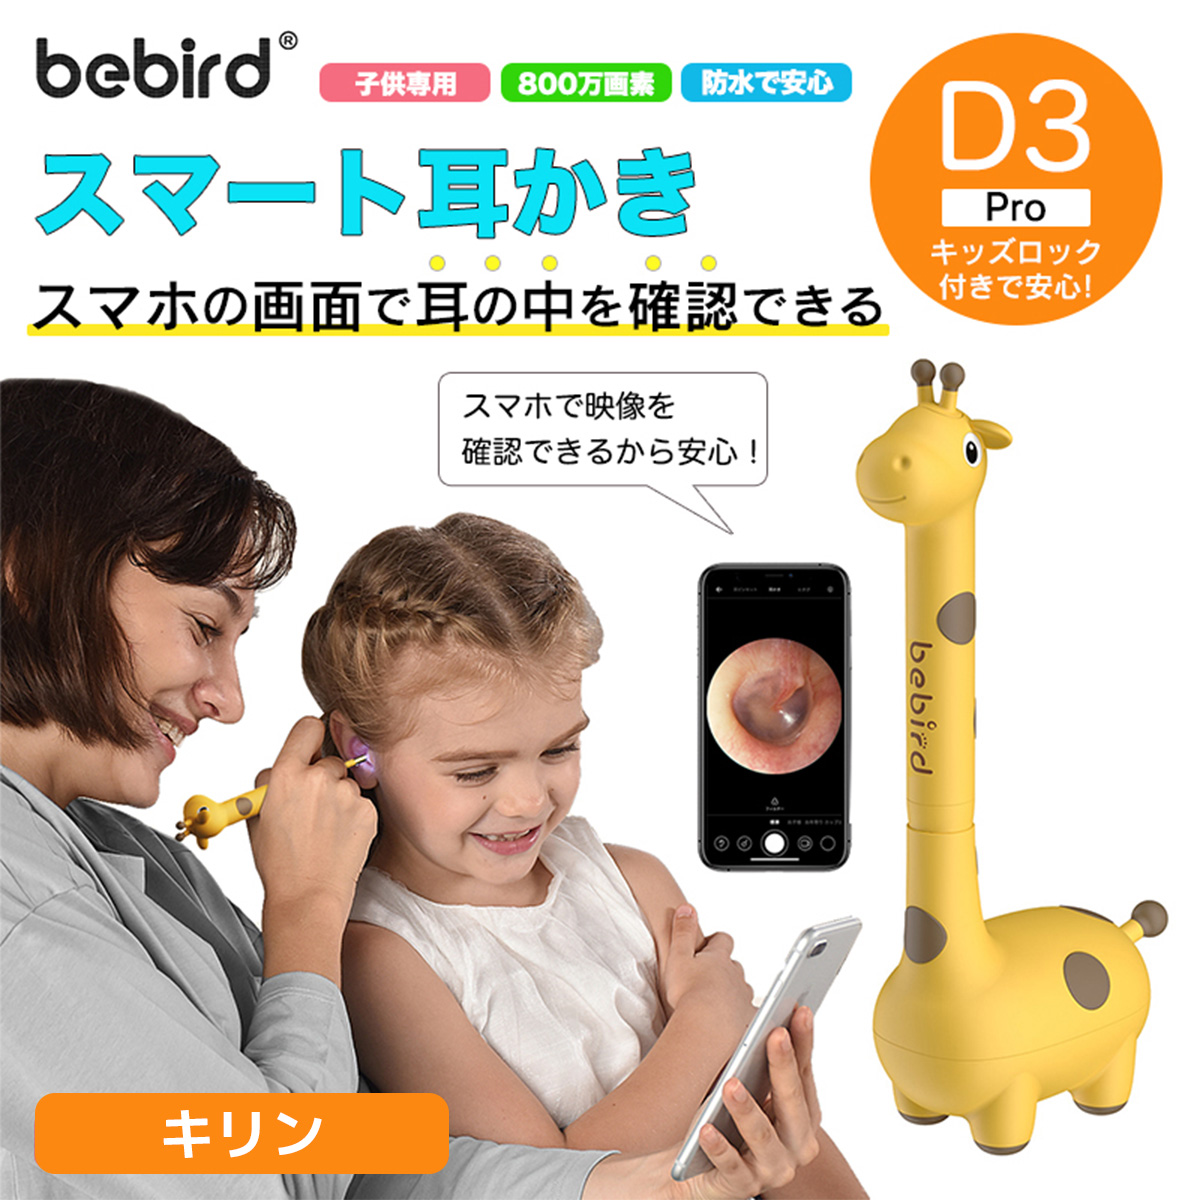 【在庫品/即納】bebird スマート耳かき D3Pro イエロー